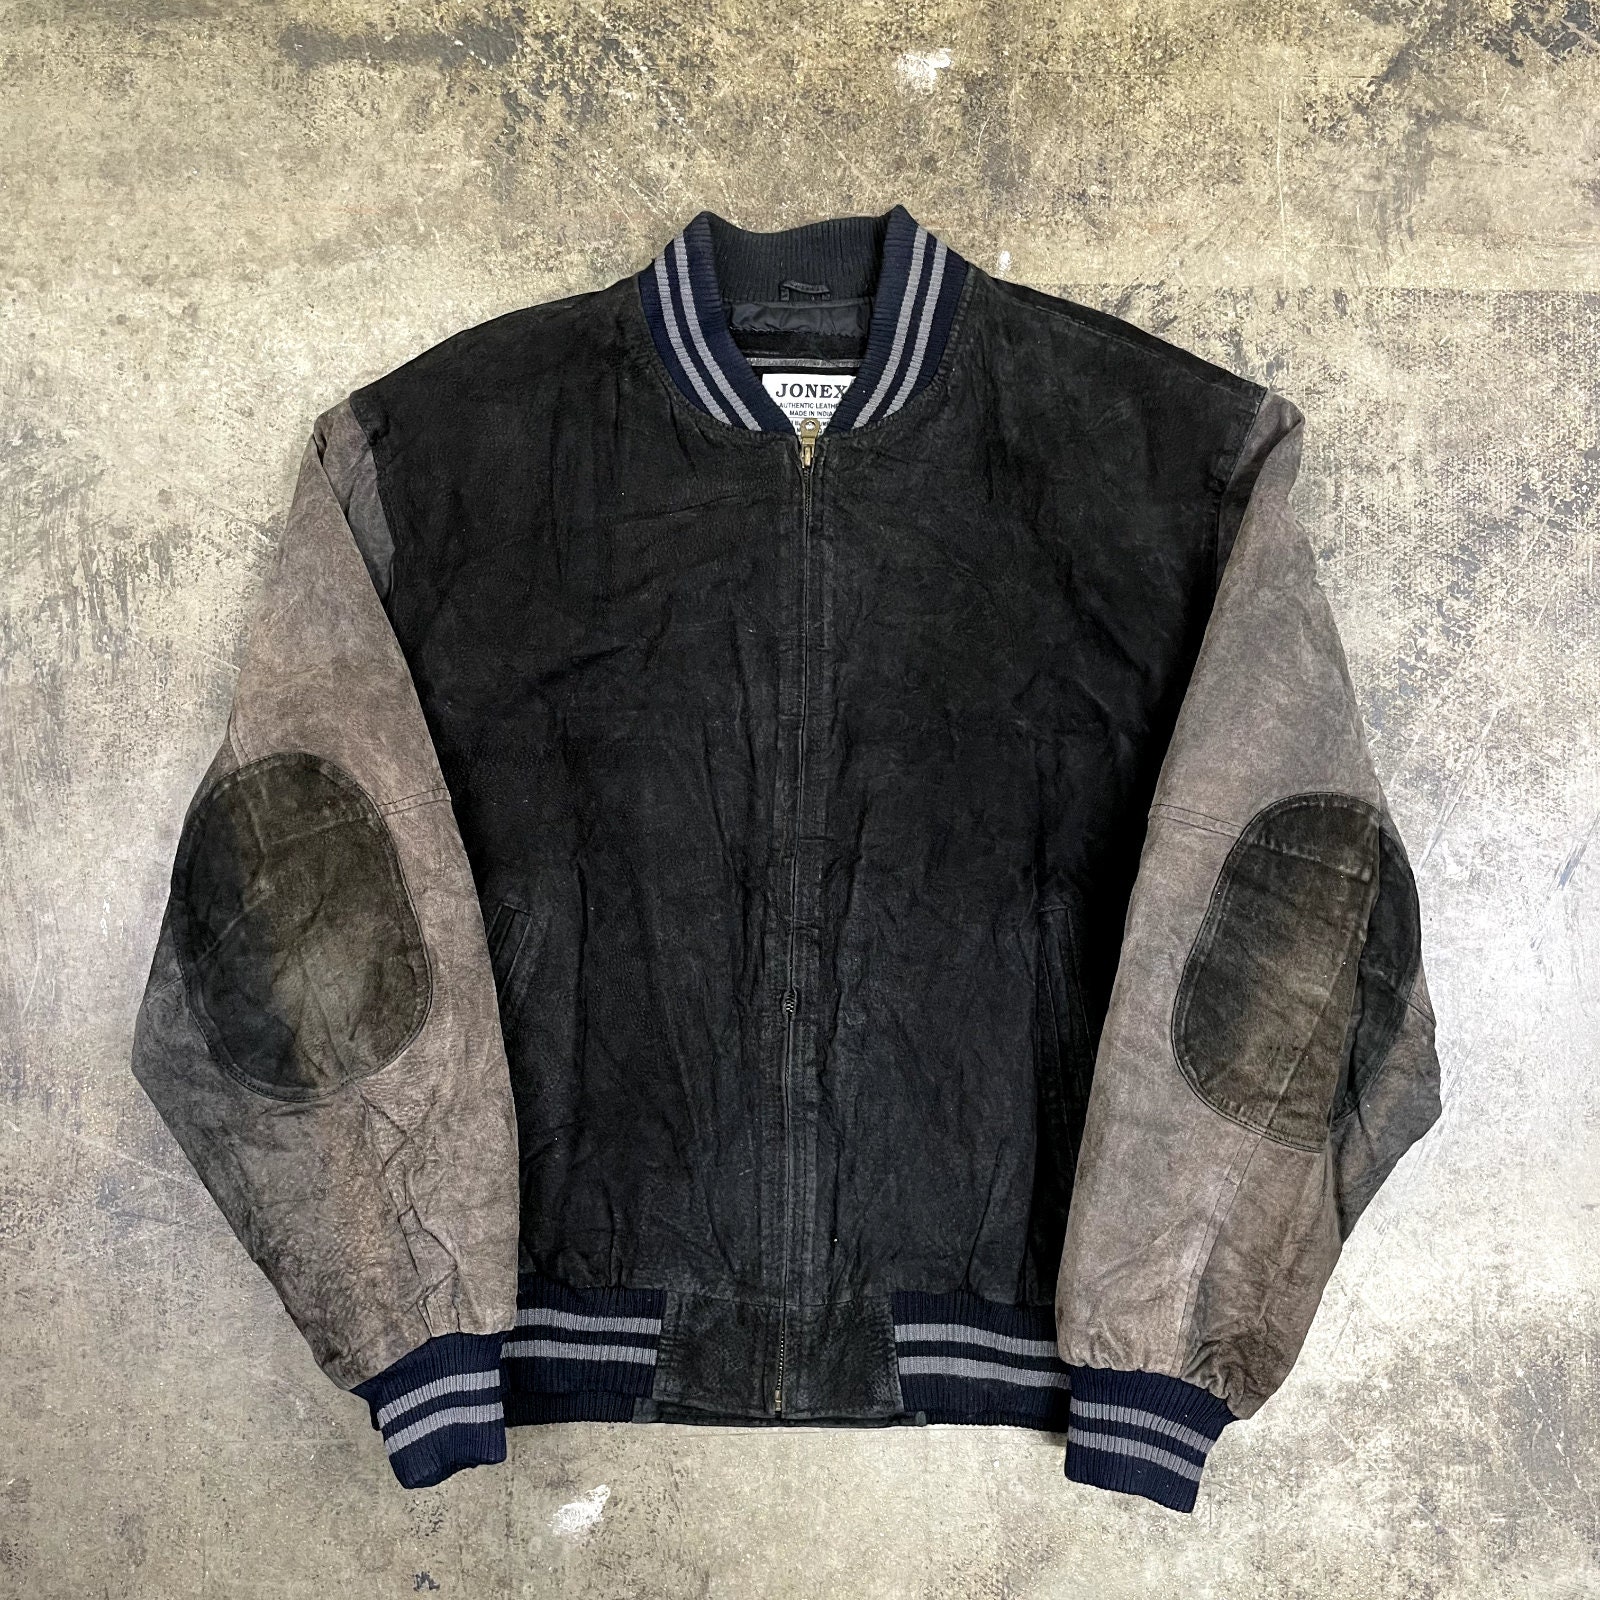 Suede Leather Varsity Jacket